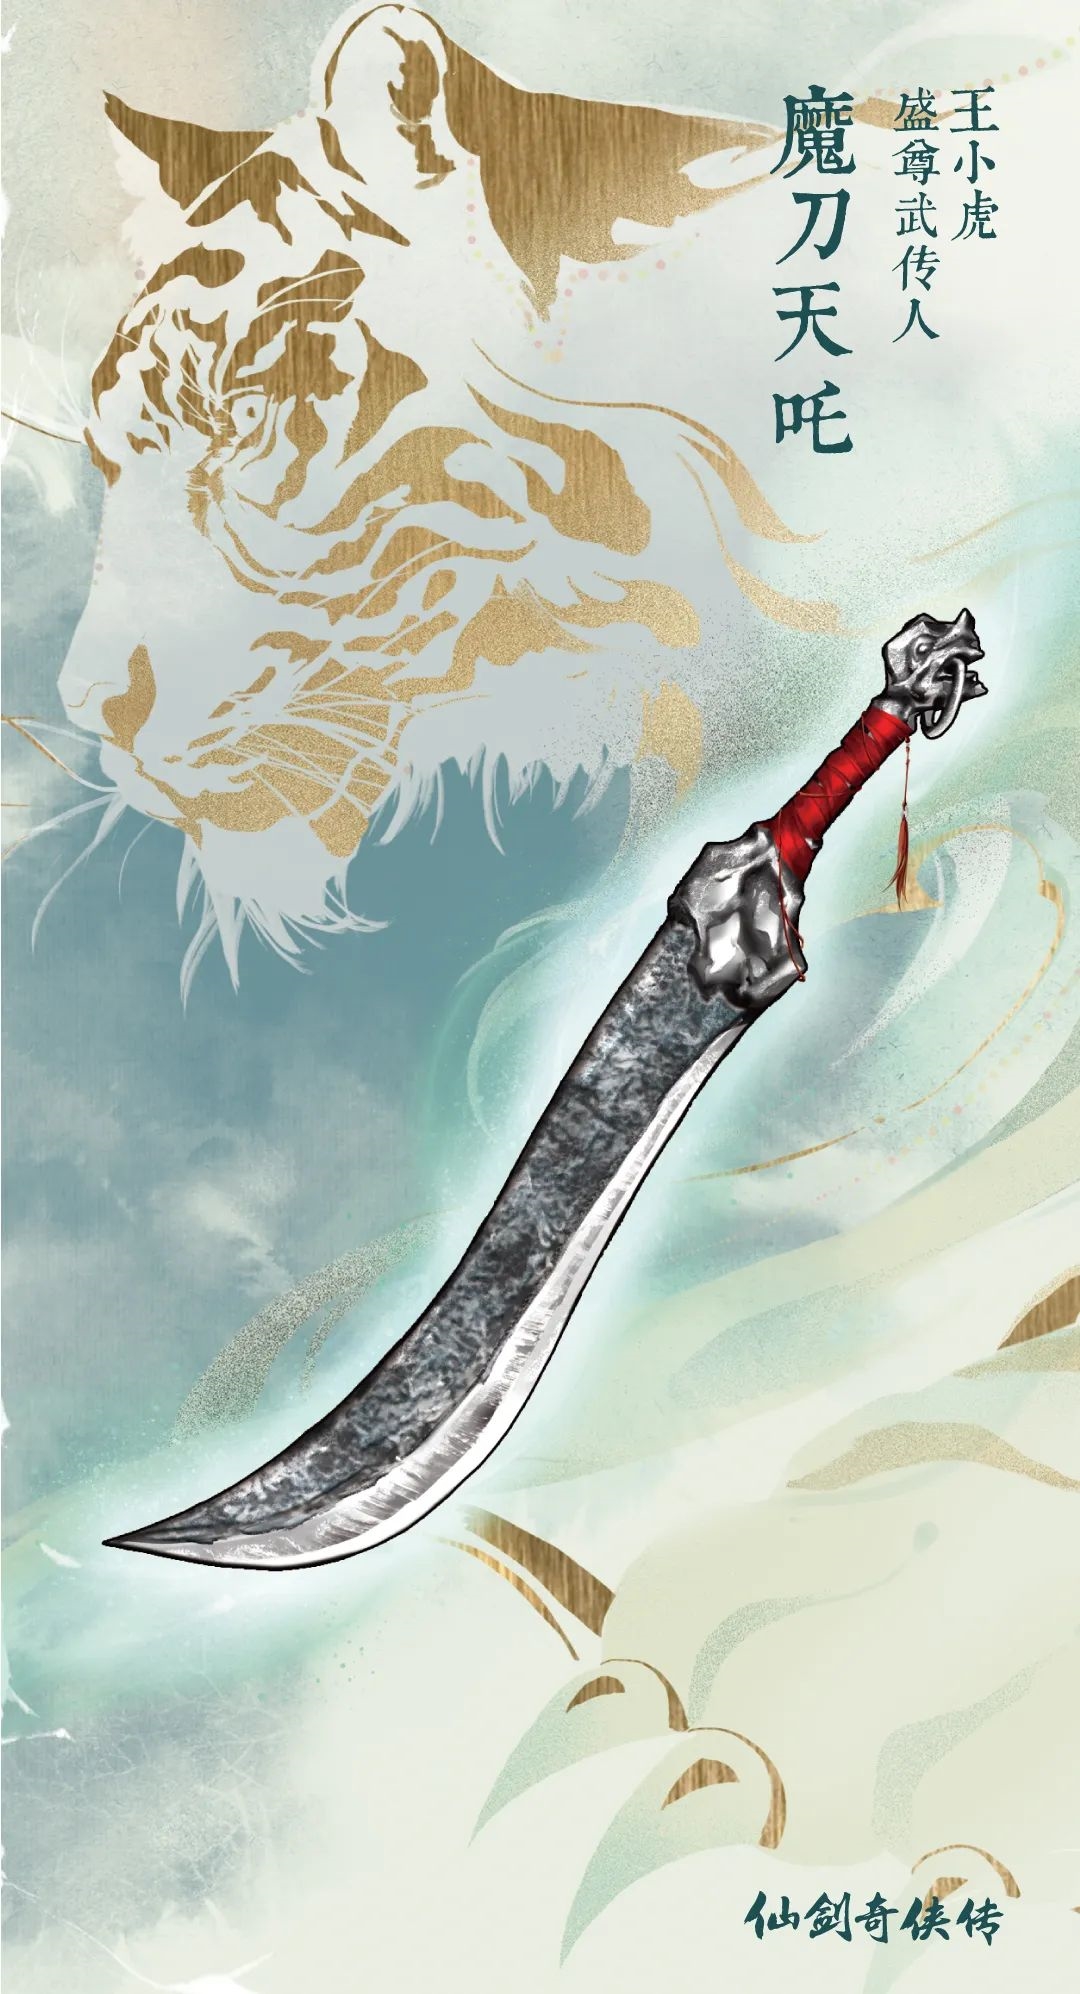 仙剑25周年神秘纪念套装曝光 经典武器魔剑镇妖剑等亮相